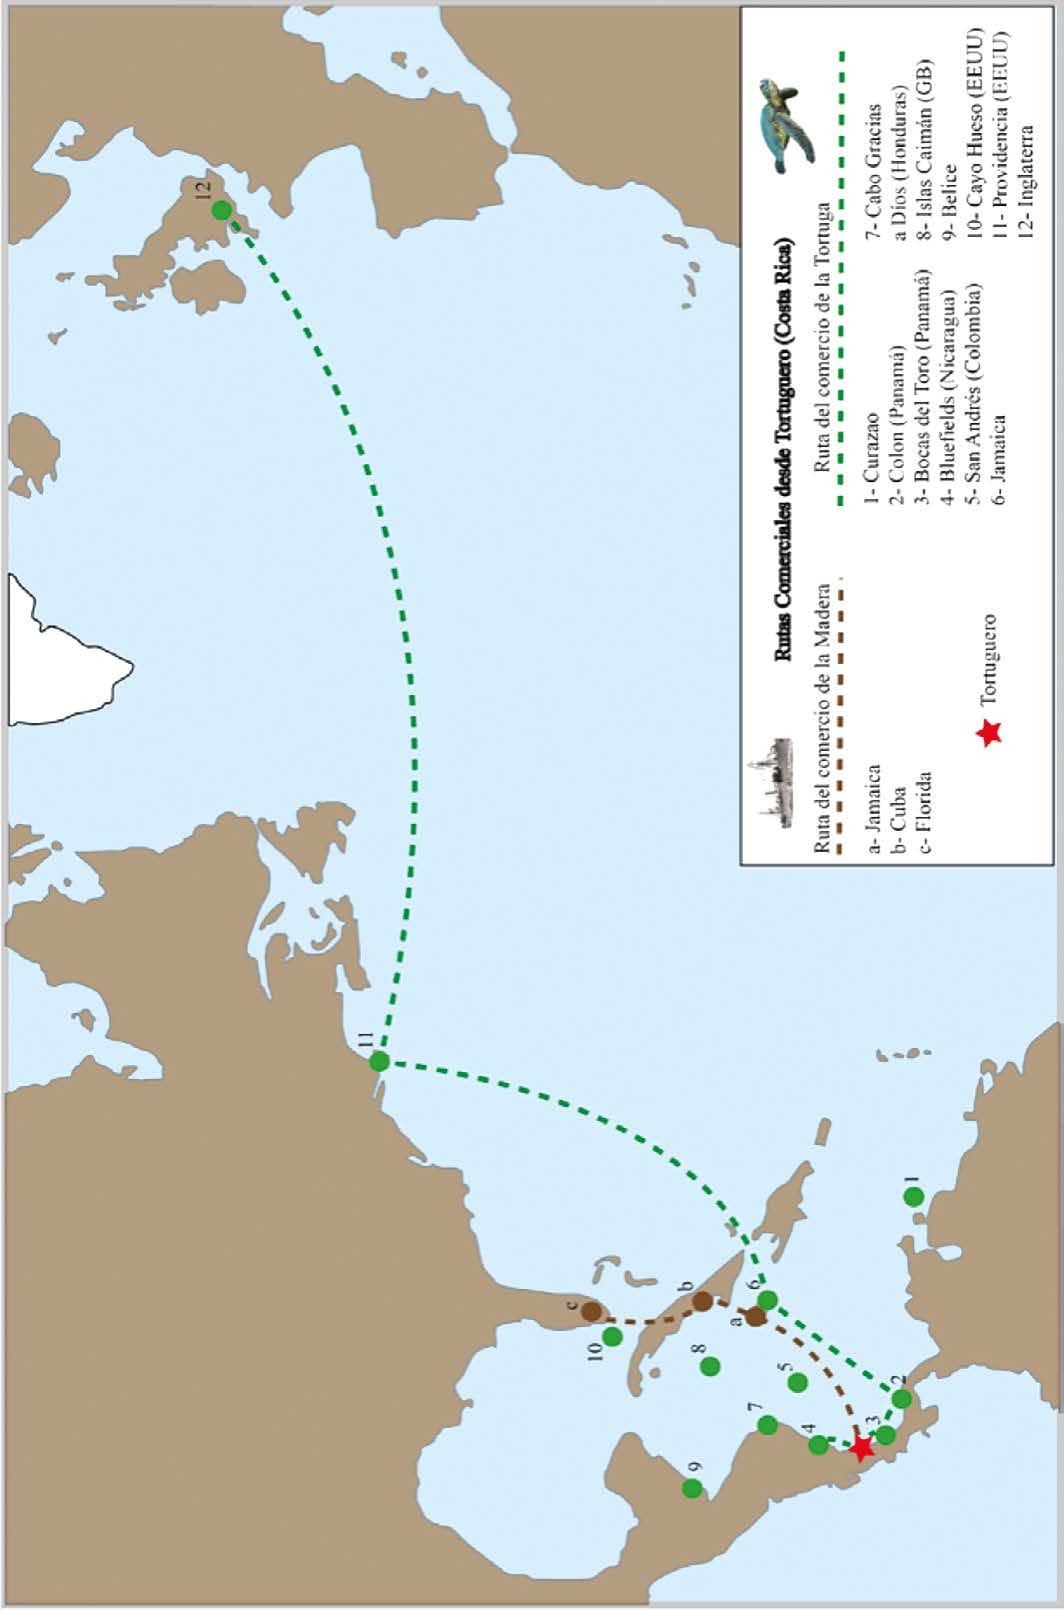  Mapa que sintetiza las rutas comerciales
desde Tortuguero, se enfatizan los principales productos extraídos y explotados
allí: las tortugas y la madera